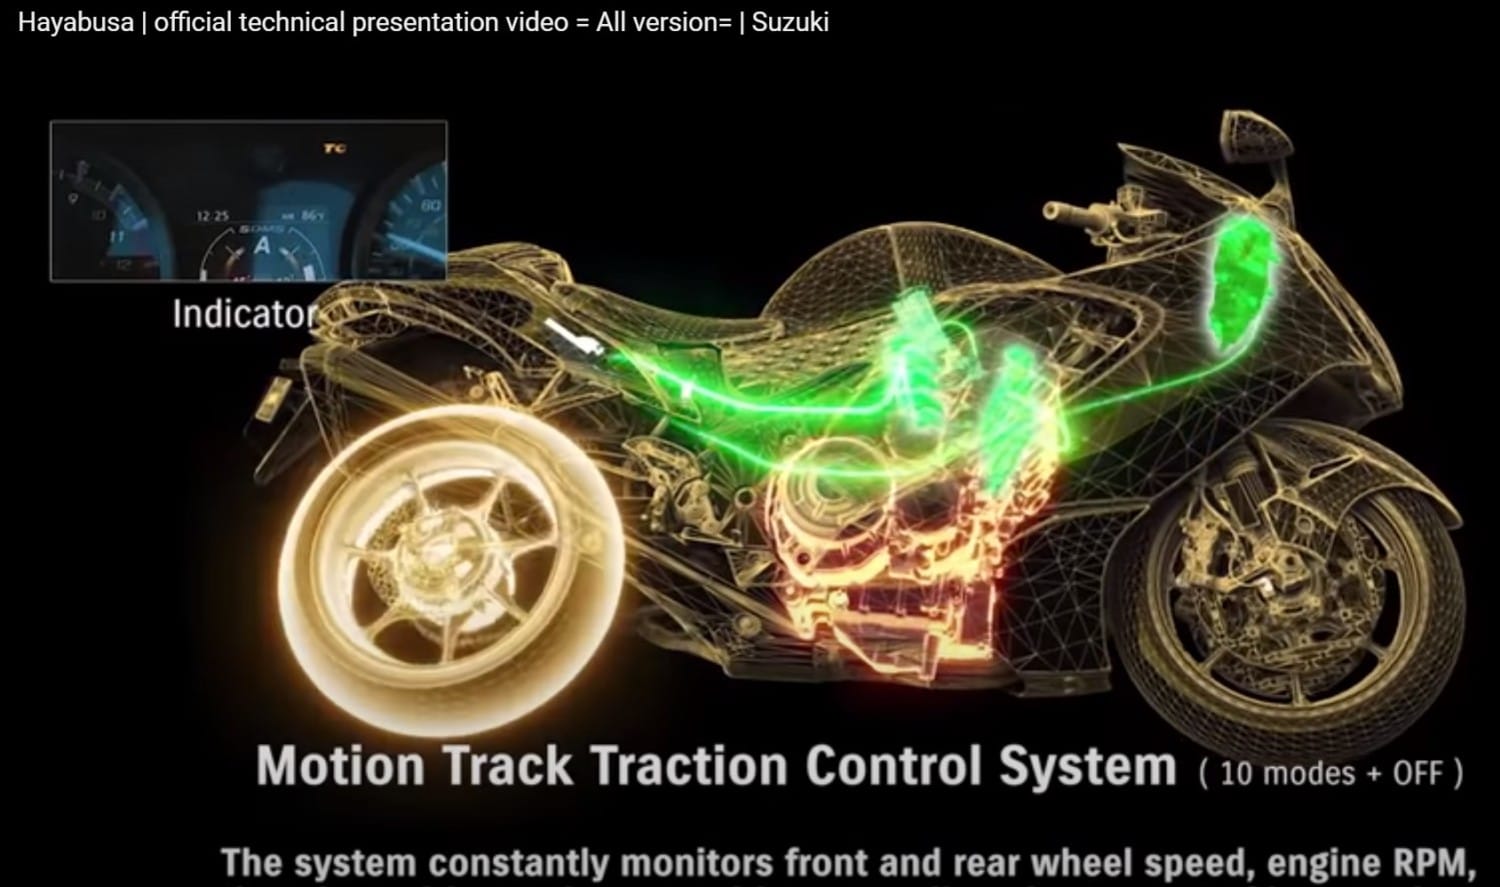 Hayabusa video med komplet teknisk gennemgang